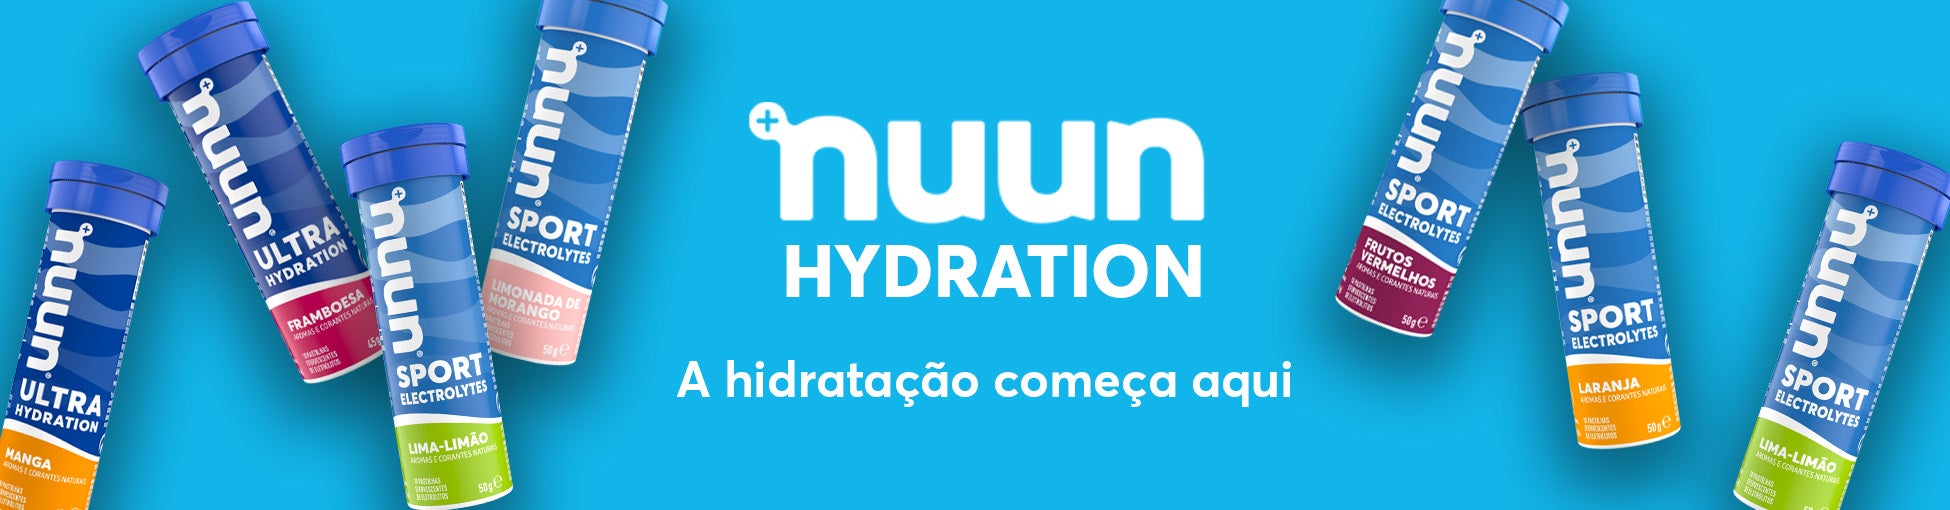 Nuun Hydration - A hidratação começa aqui